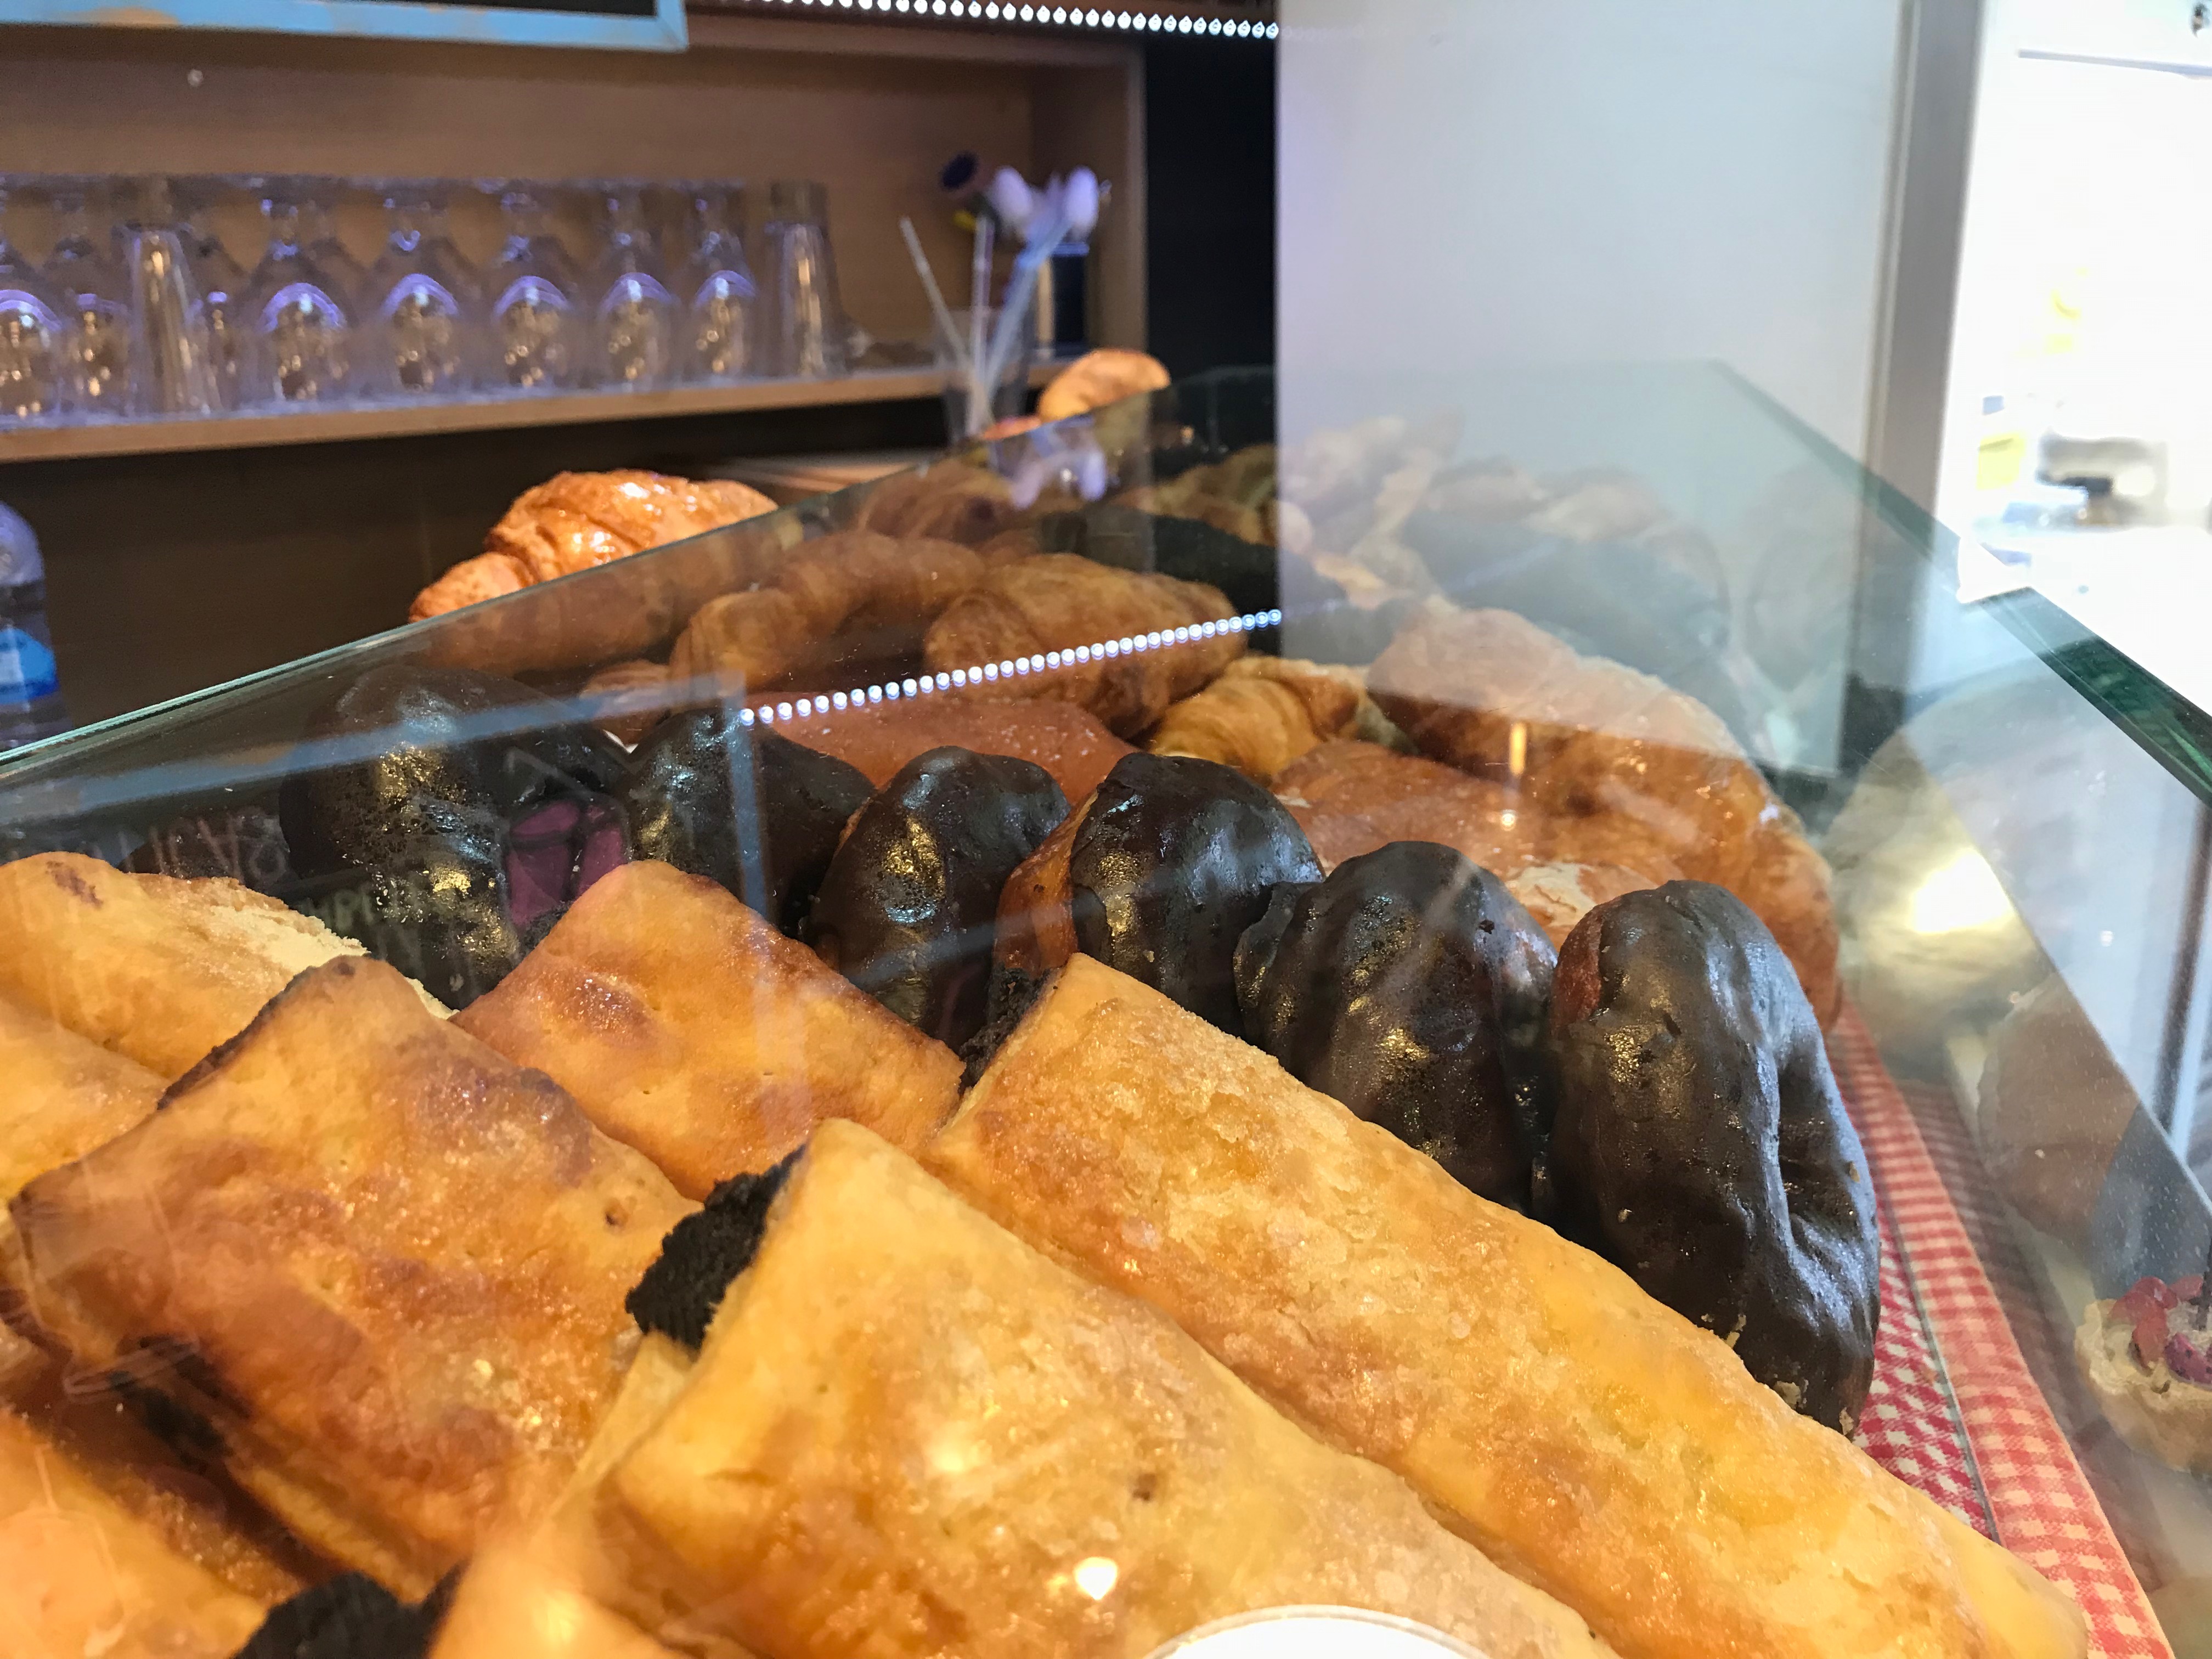 Vegan cakes and Pastry's in Santorini's cafe Barcelona.